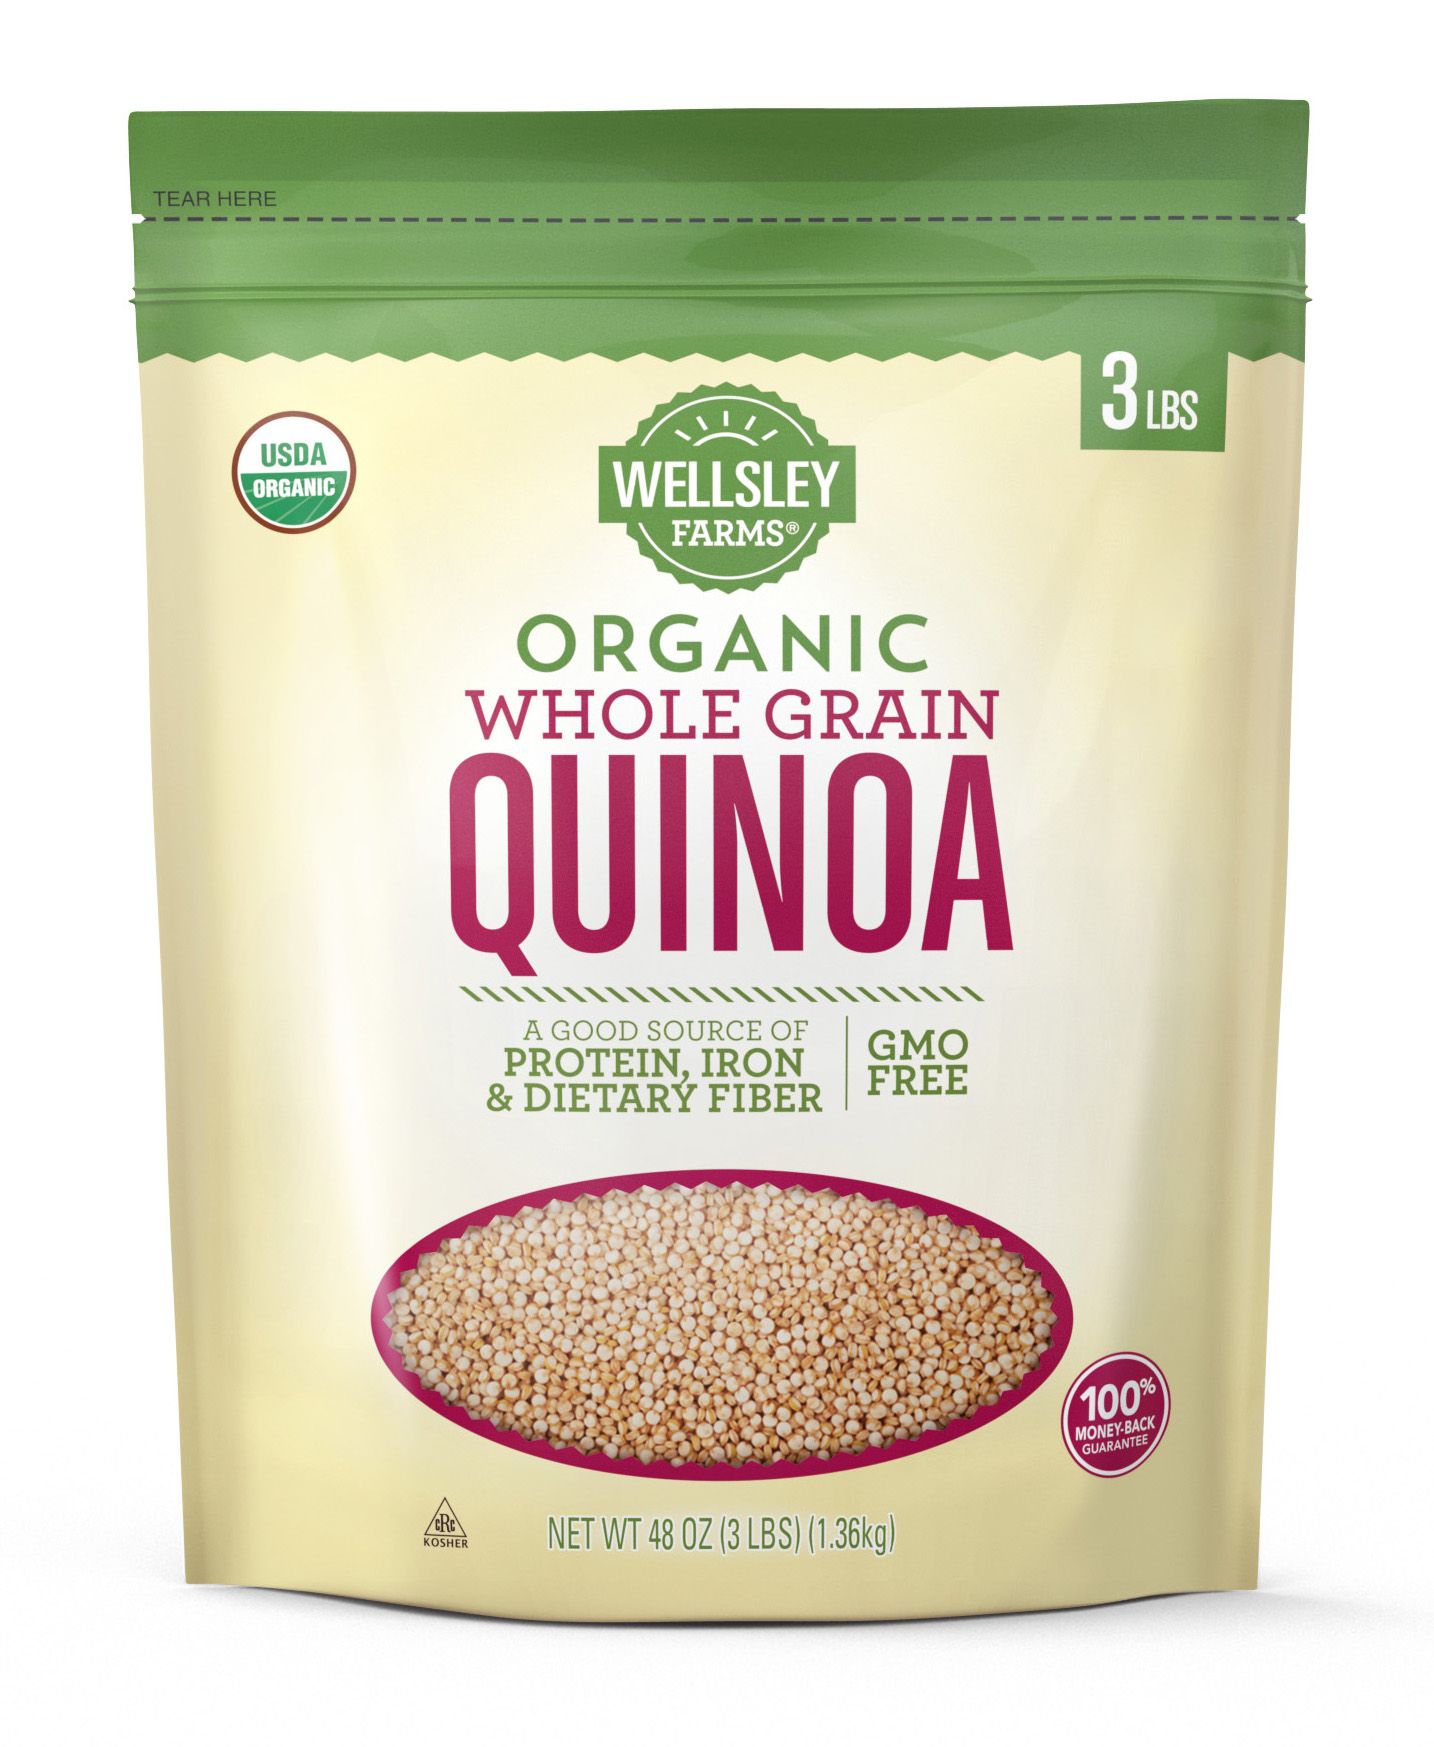 Wellsley Farms Organic Quinoa, 3 lbs.